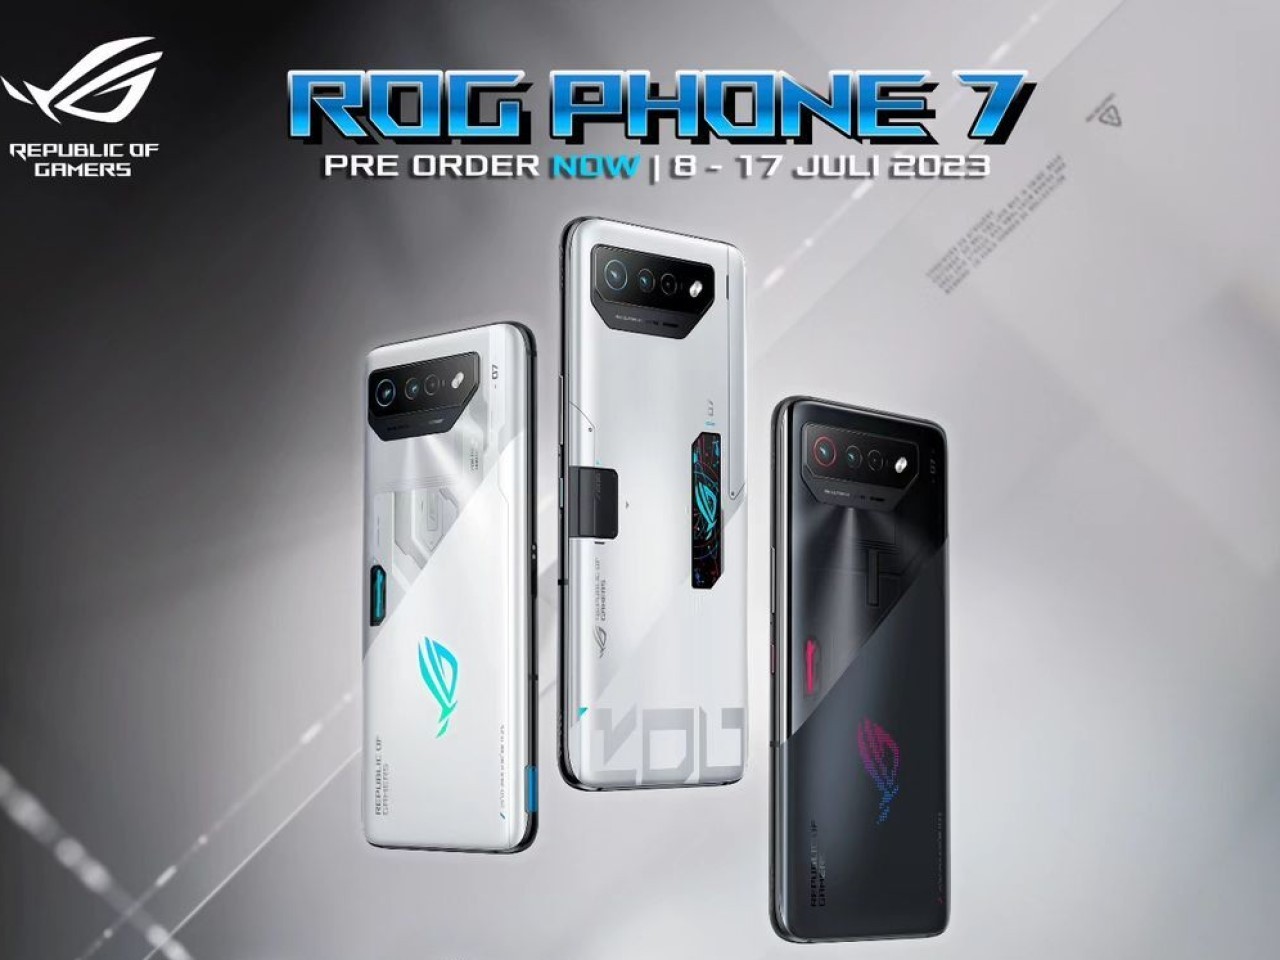 Pre Order ROG Phone 7 Secara Offline di Indonesia Resmi Digelar